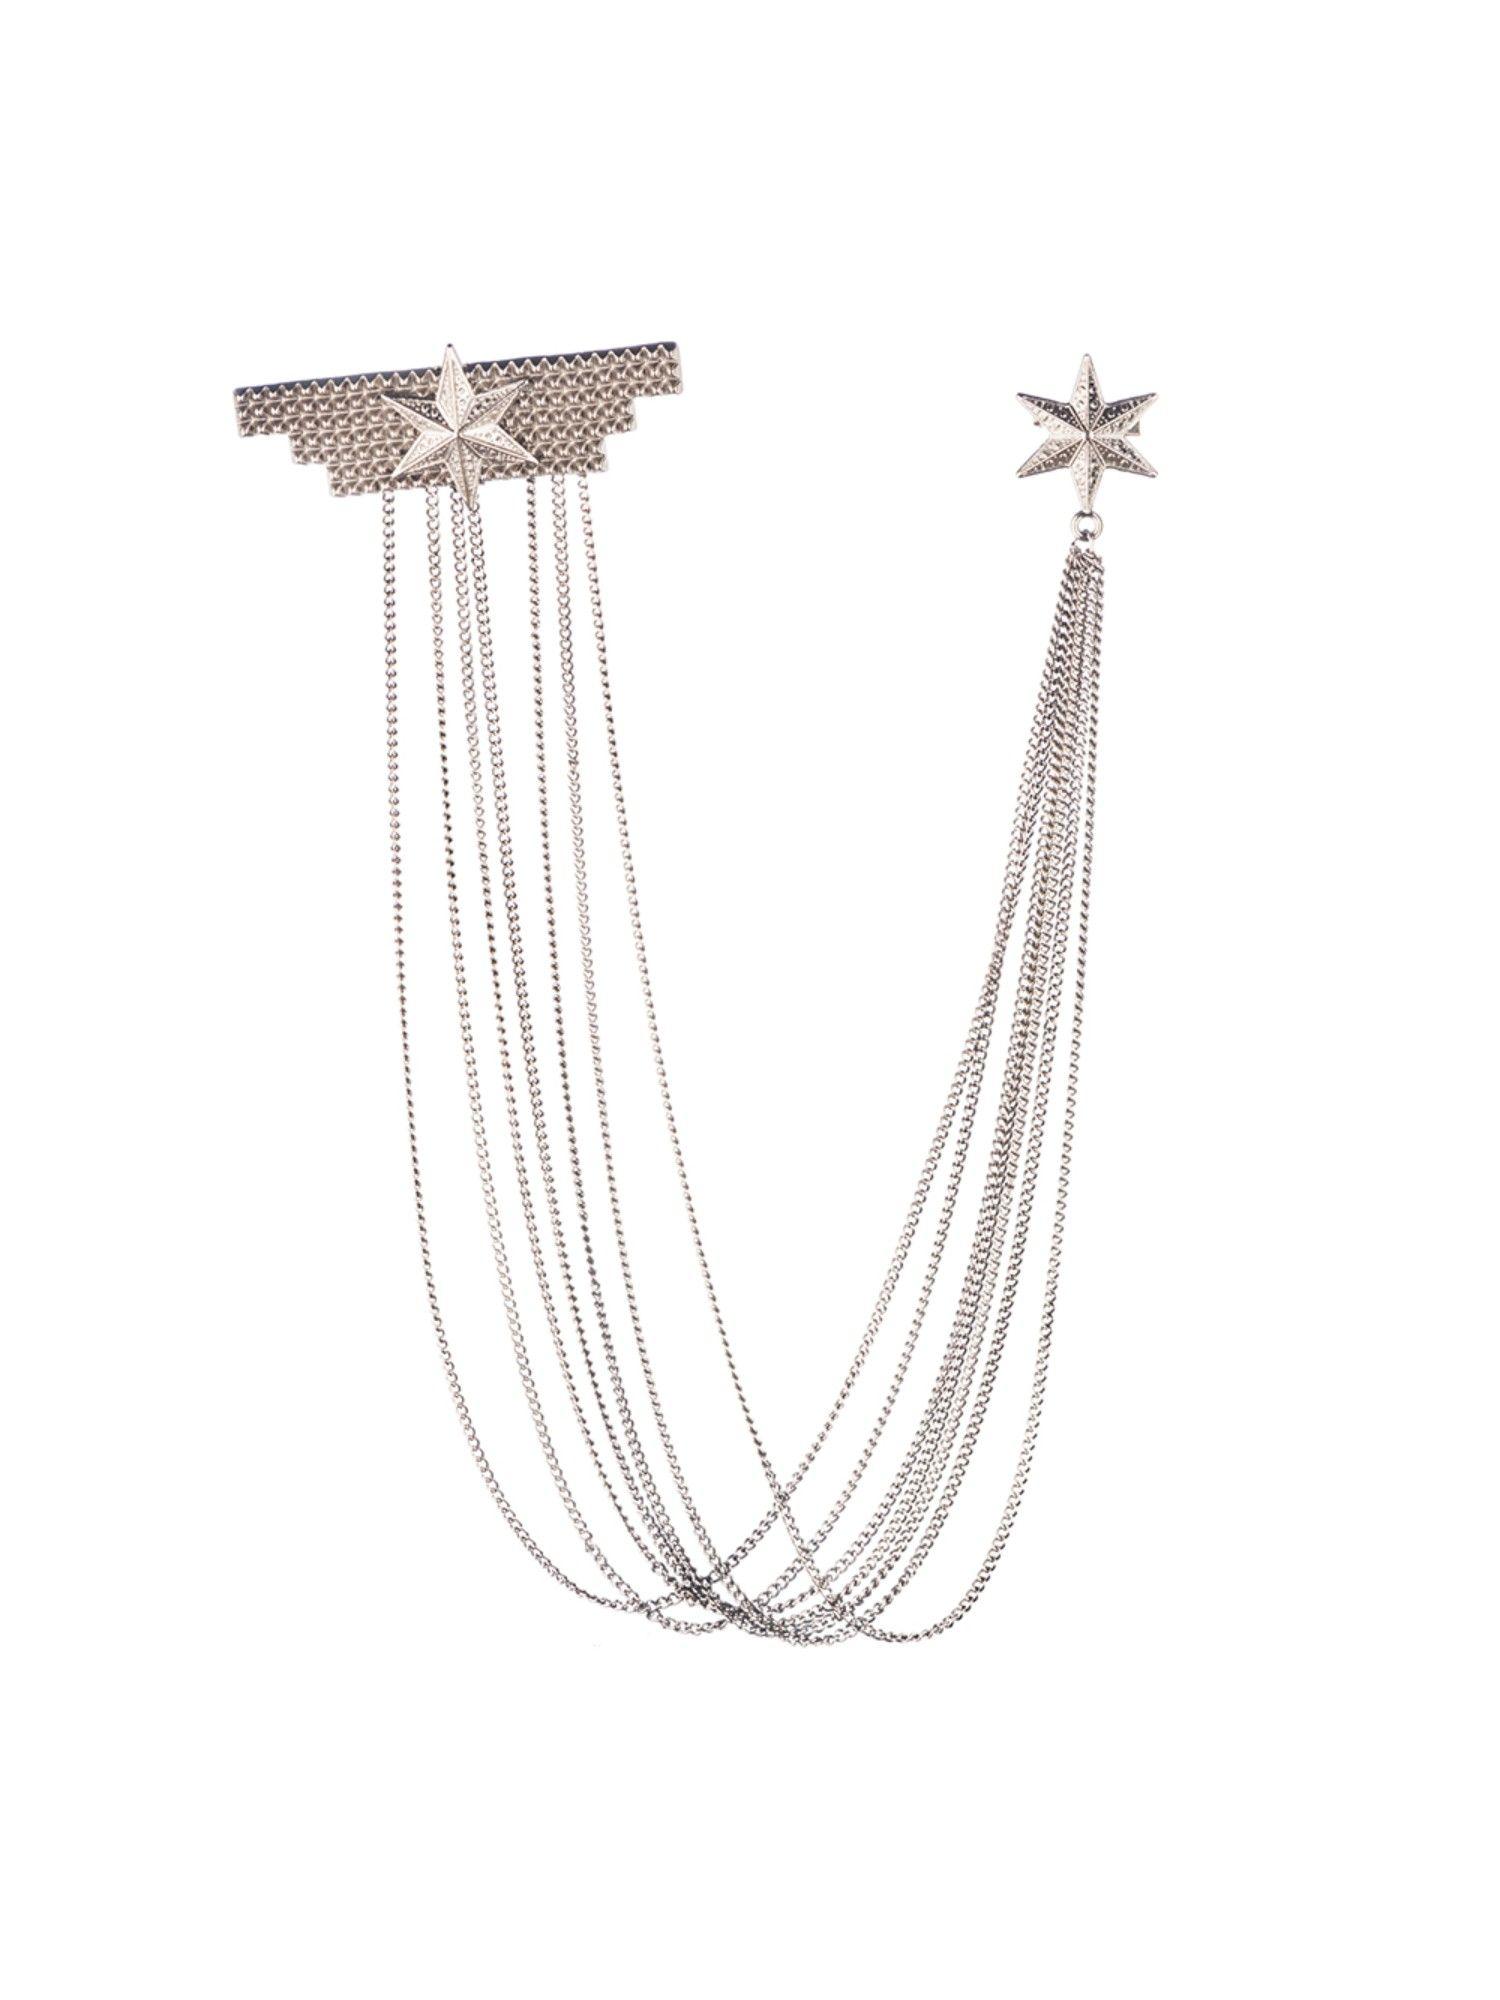 royal star silver chain lapel pin